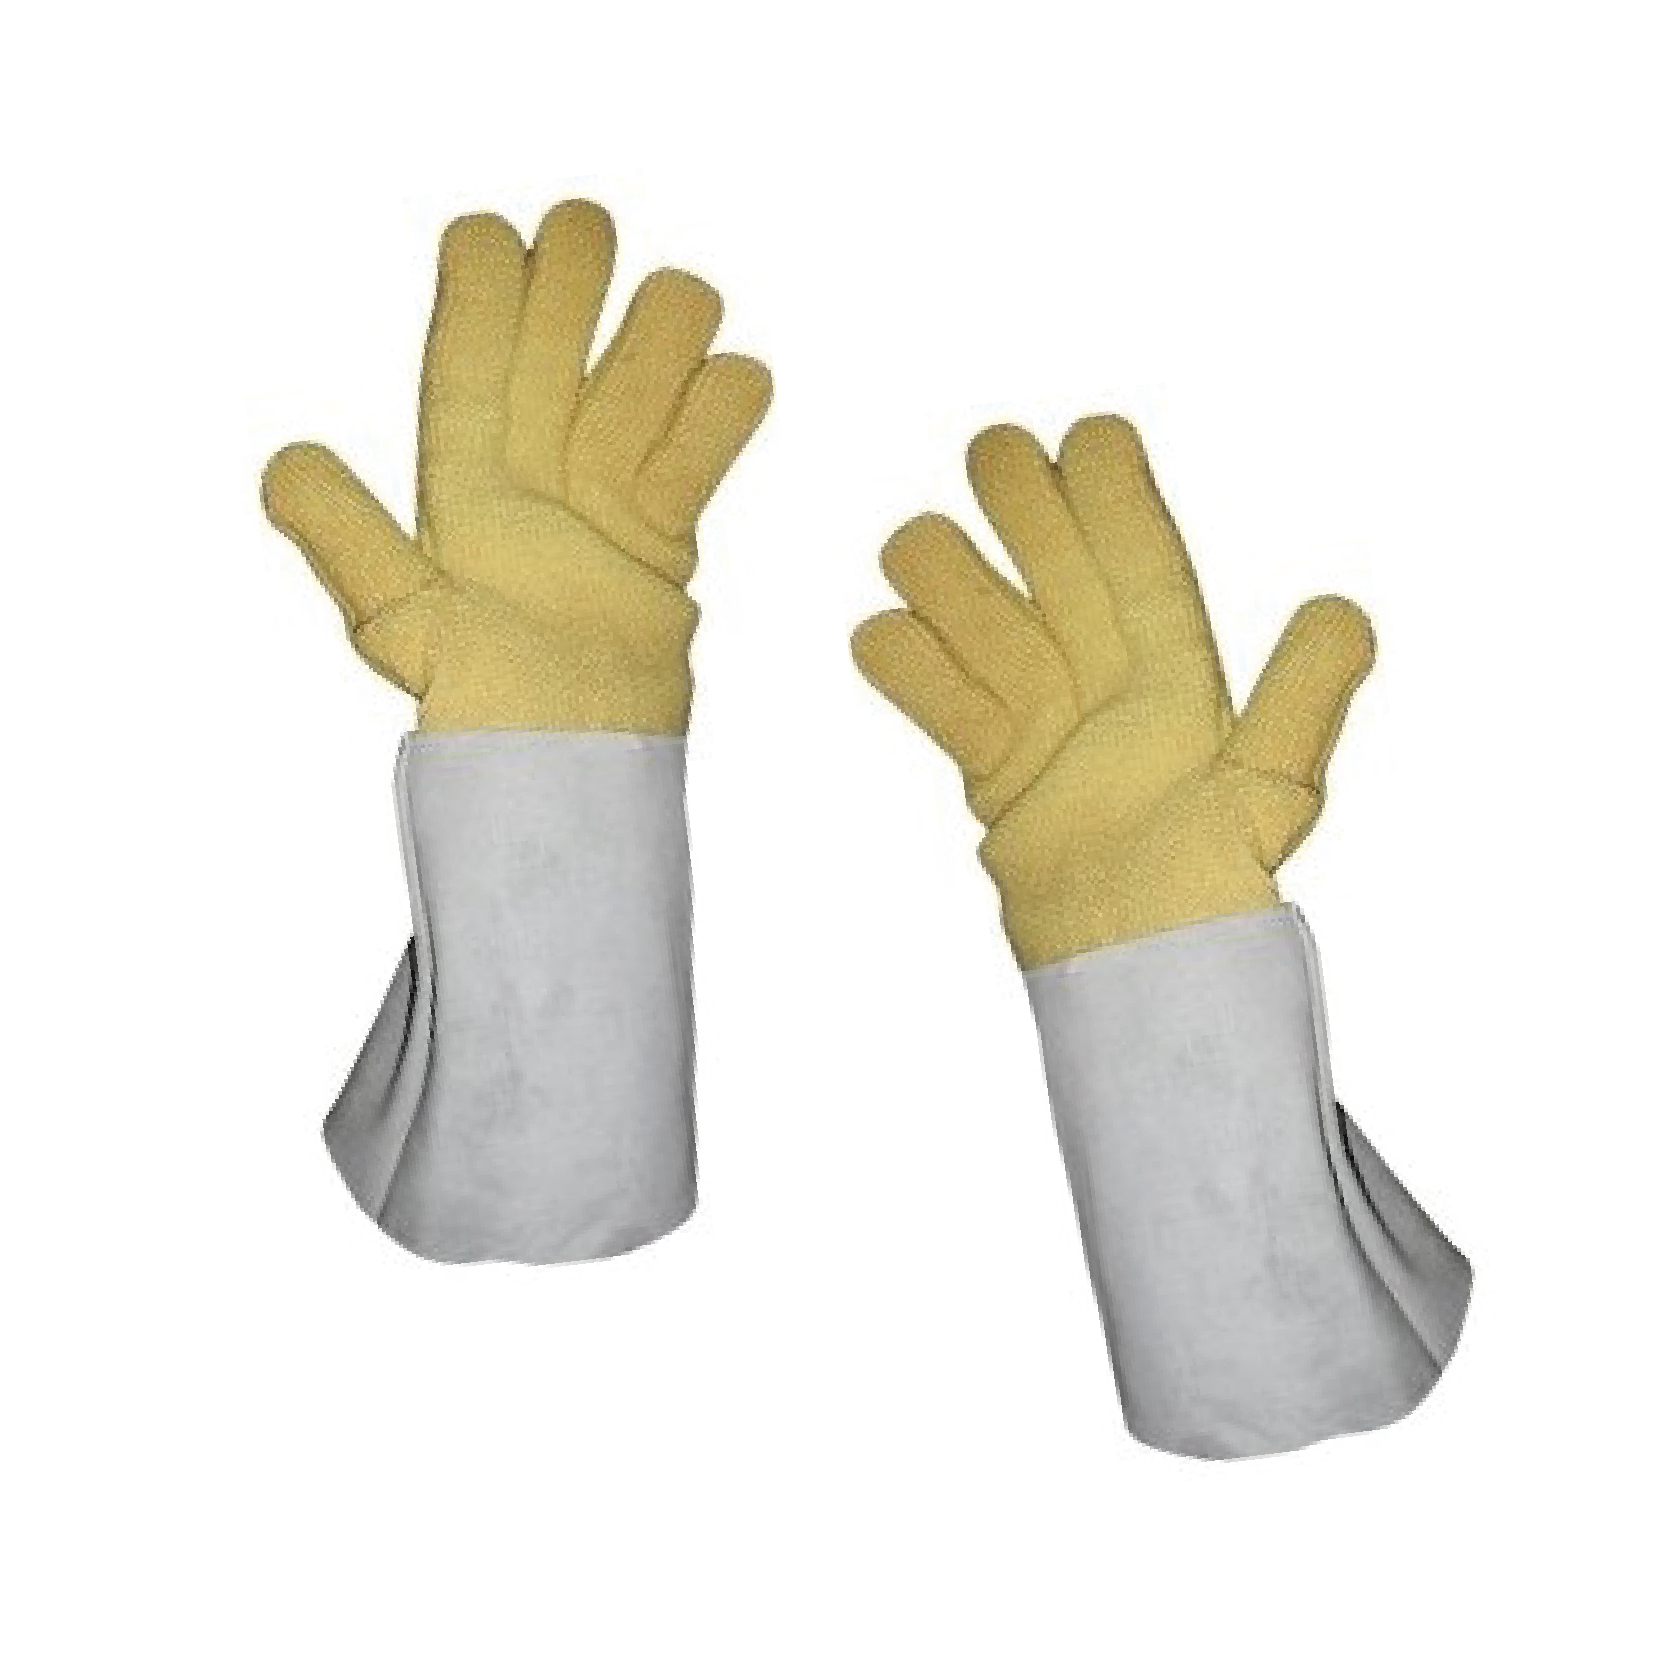 Par de guantes de alta temperatura para panadería Pan Con Pan, amarillos con manguito gris largo.